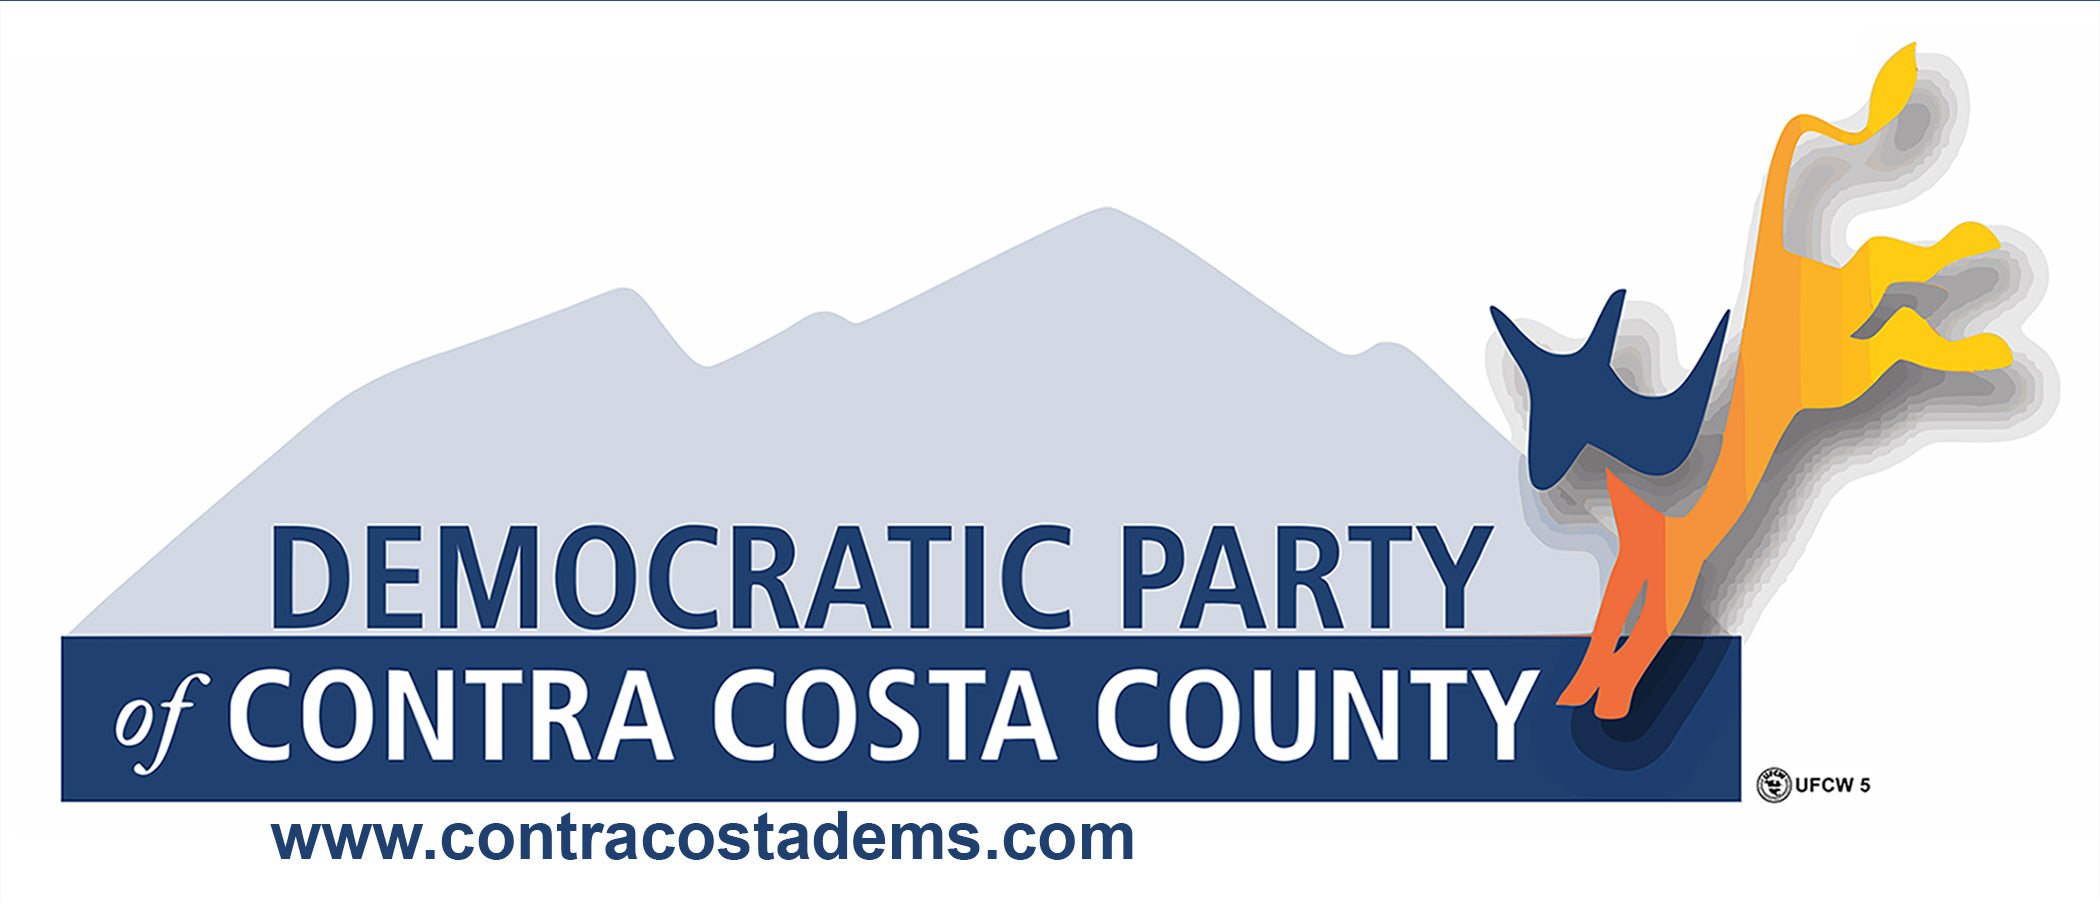 Democratic Party of Contra Costa County Bumper Sticker